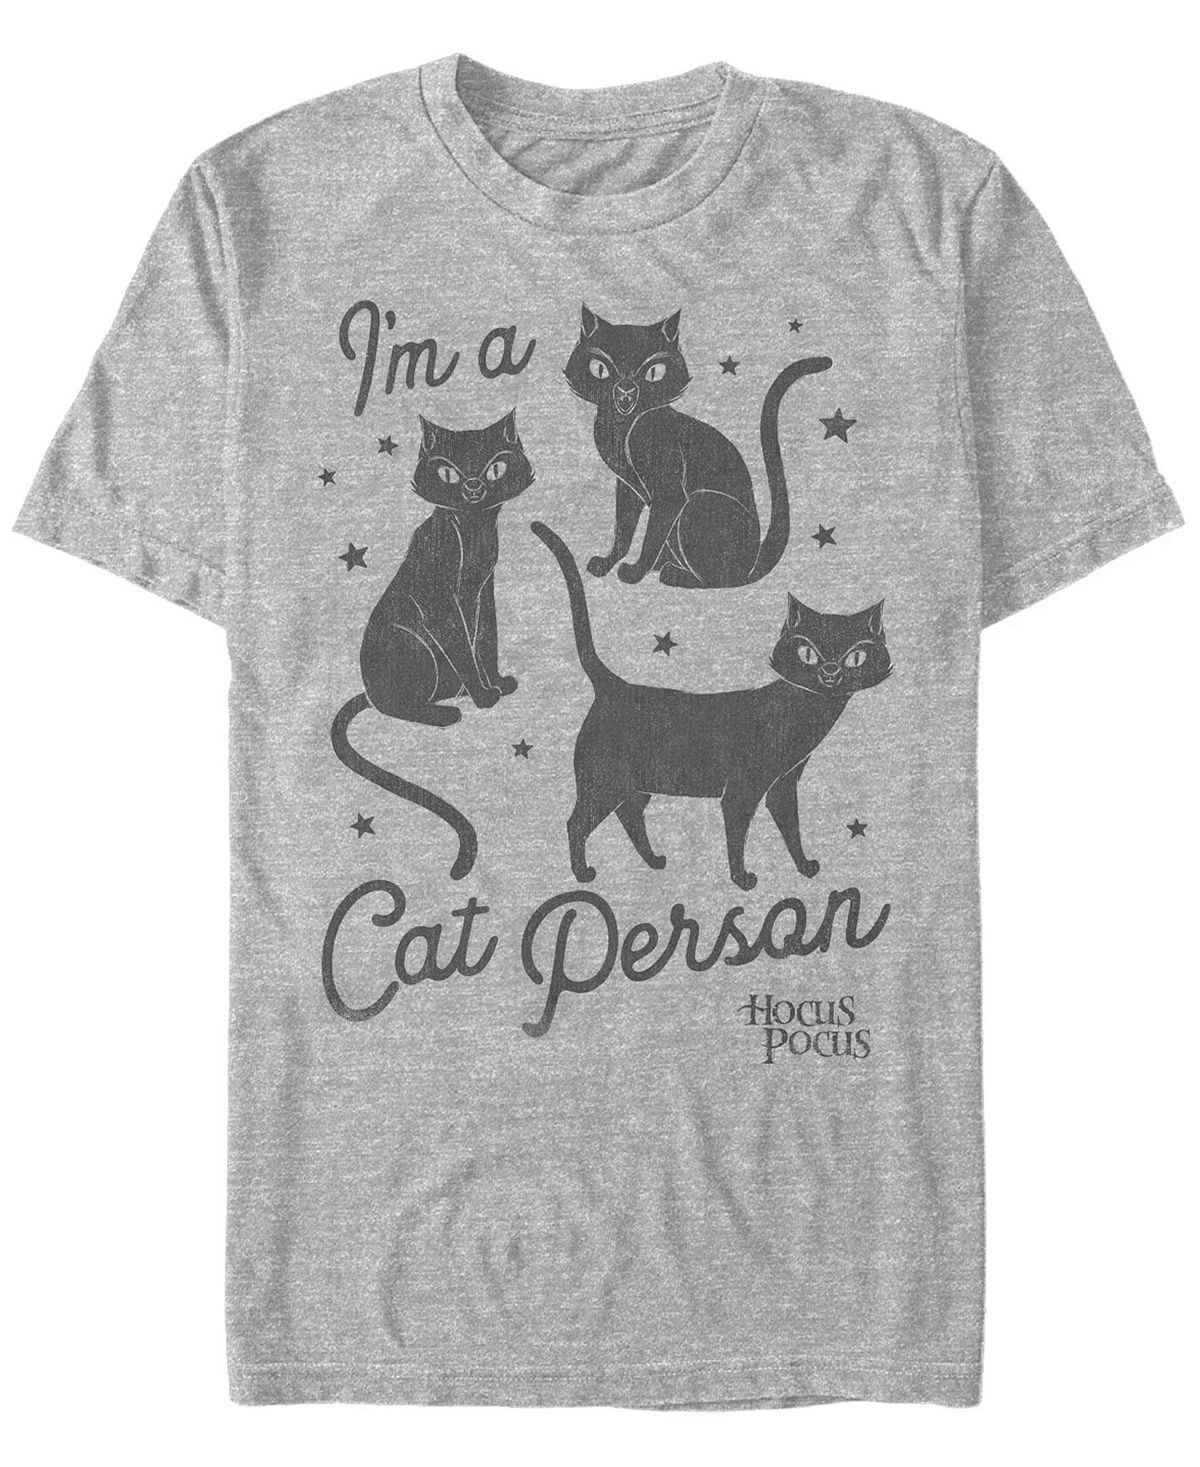 Мужская футболка с коротким рукавом hocus pocus cat person Fifth Sun, мульти